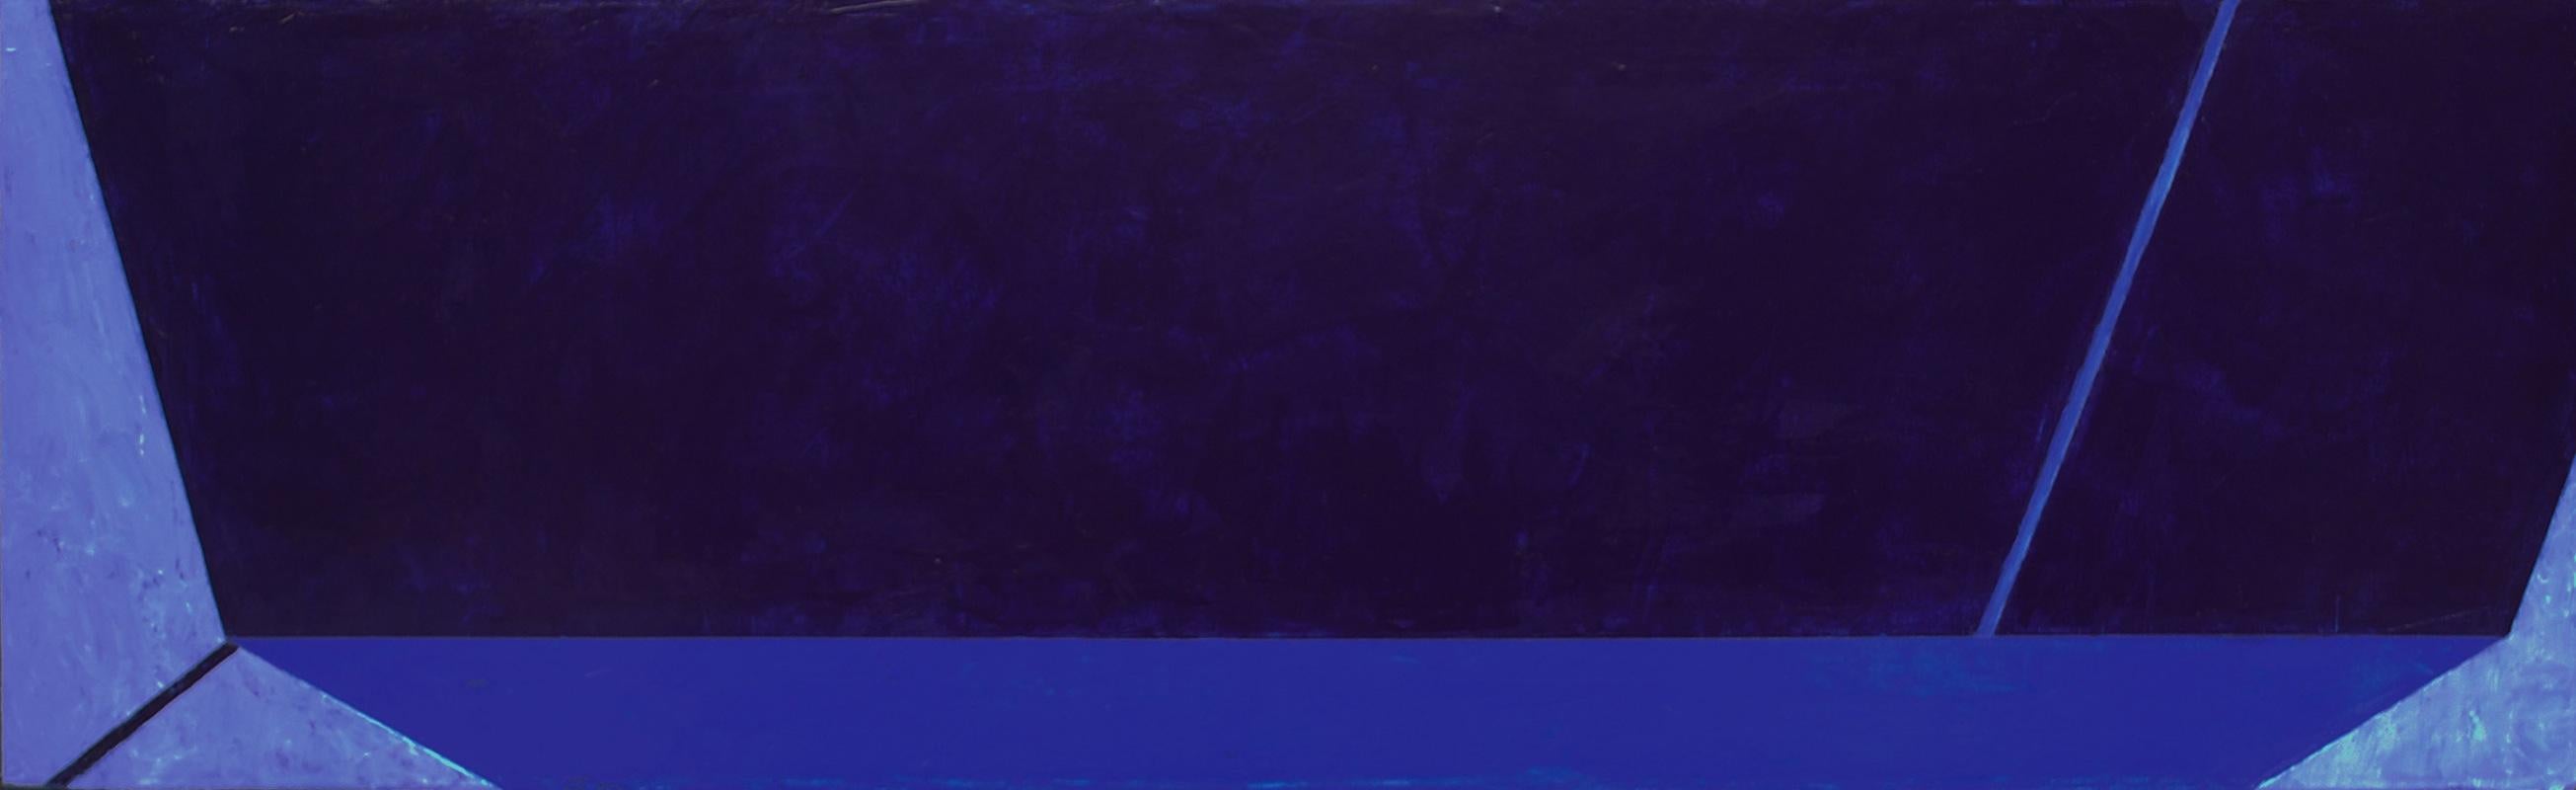 Macyn Bolt, O to C II, 2018, Minimalist, acrylic on canvas, 16 x 20 x 2 inches For Sale 4